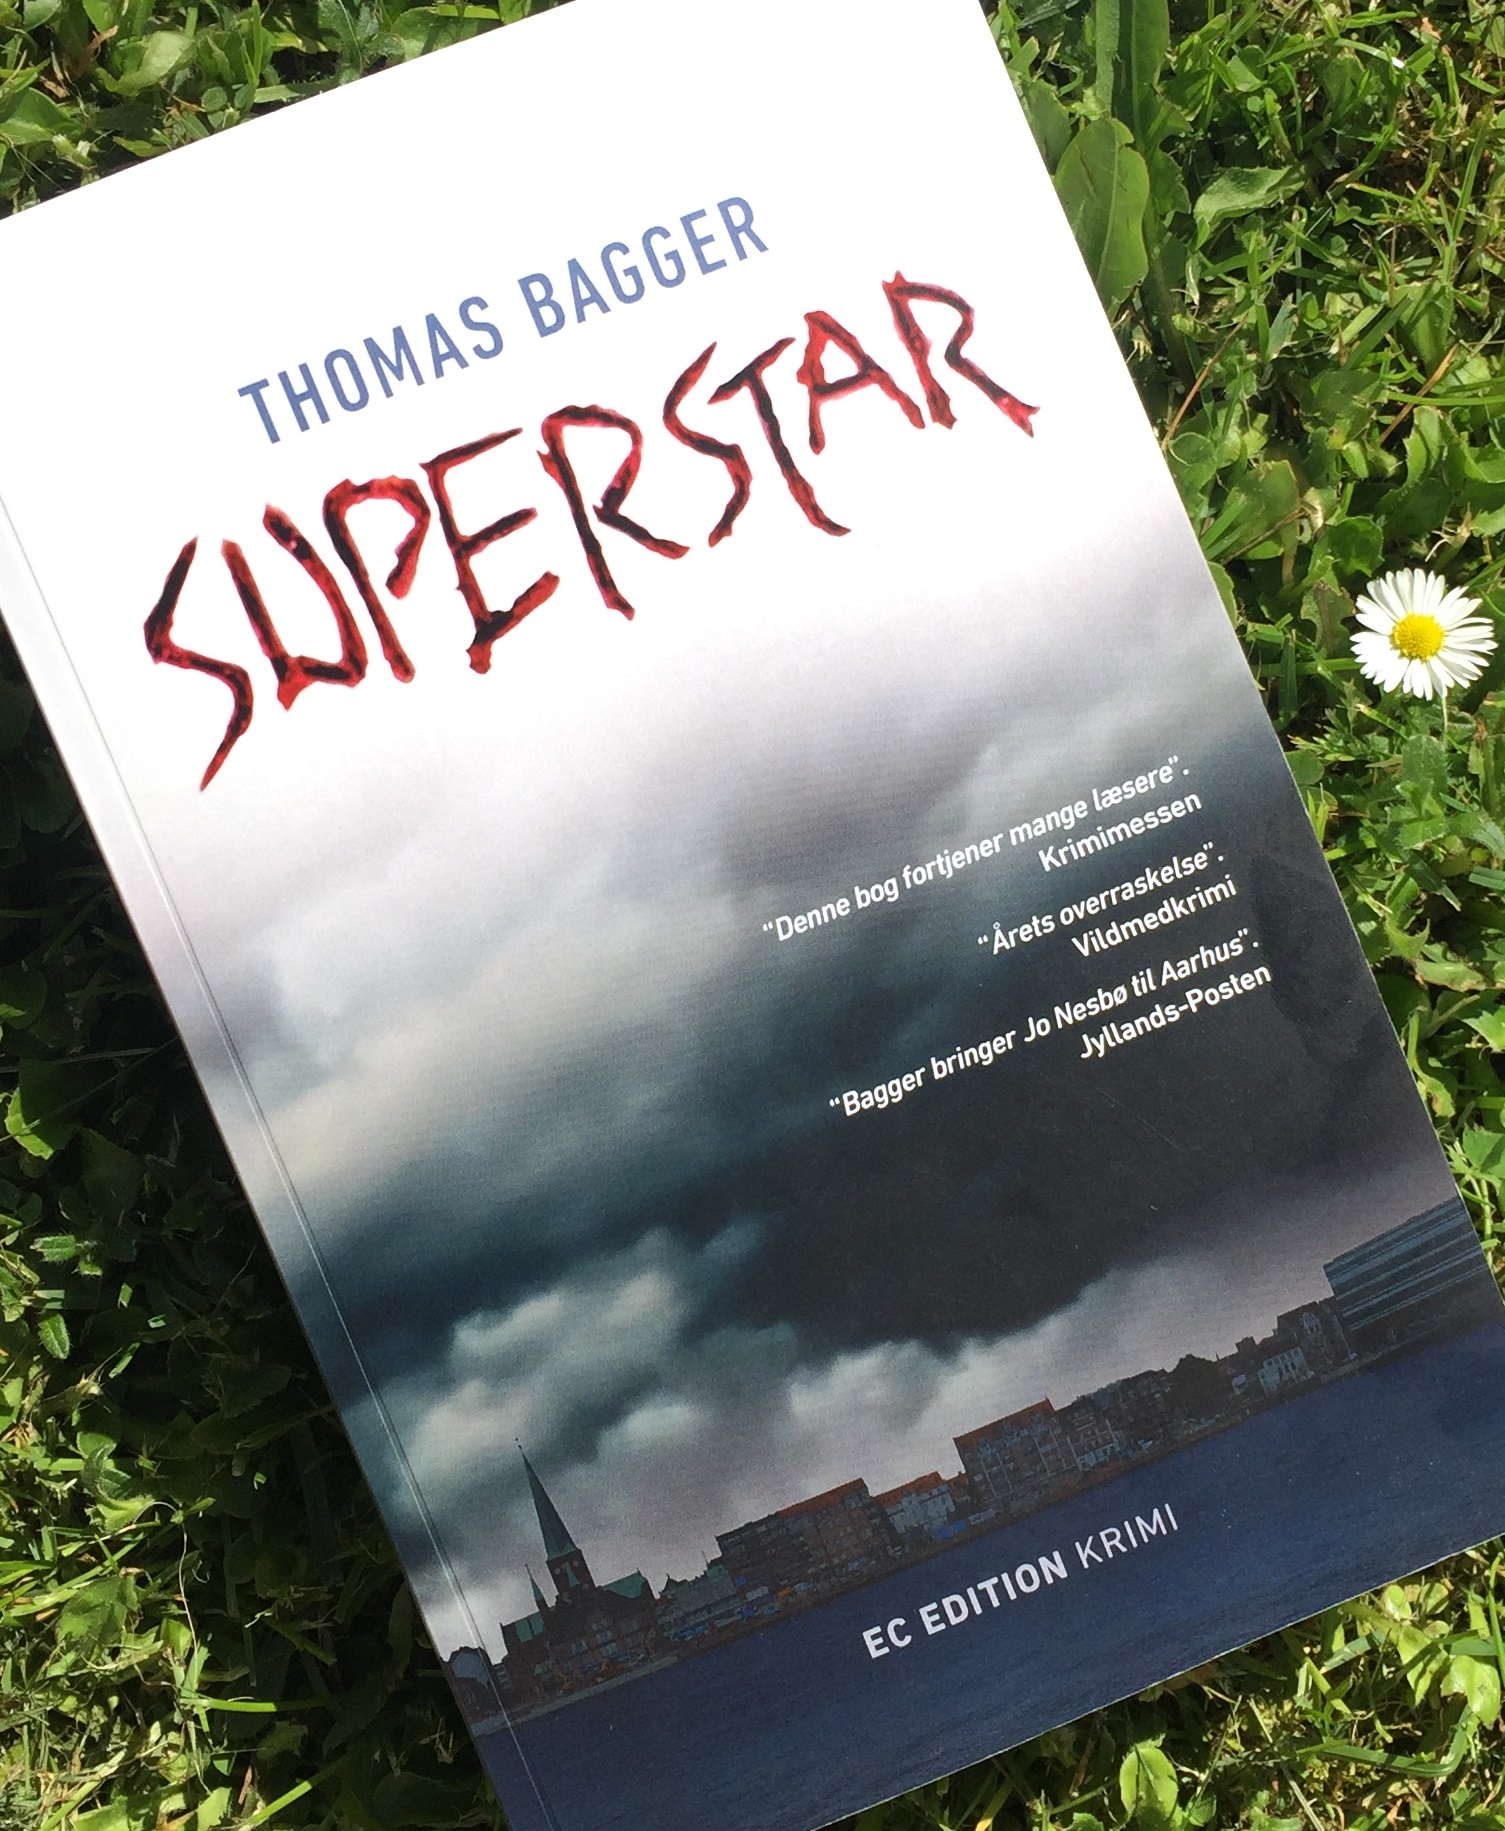 Thomas Bagger Superstar, Superstar, Thomas Bagger, Anmeldelse af Superstar af Thomas Bagger, Anmeldelse, Krumme anmelder, Krimi, EC Edition,